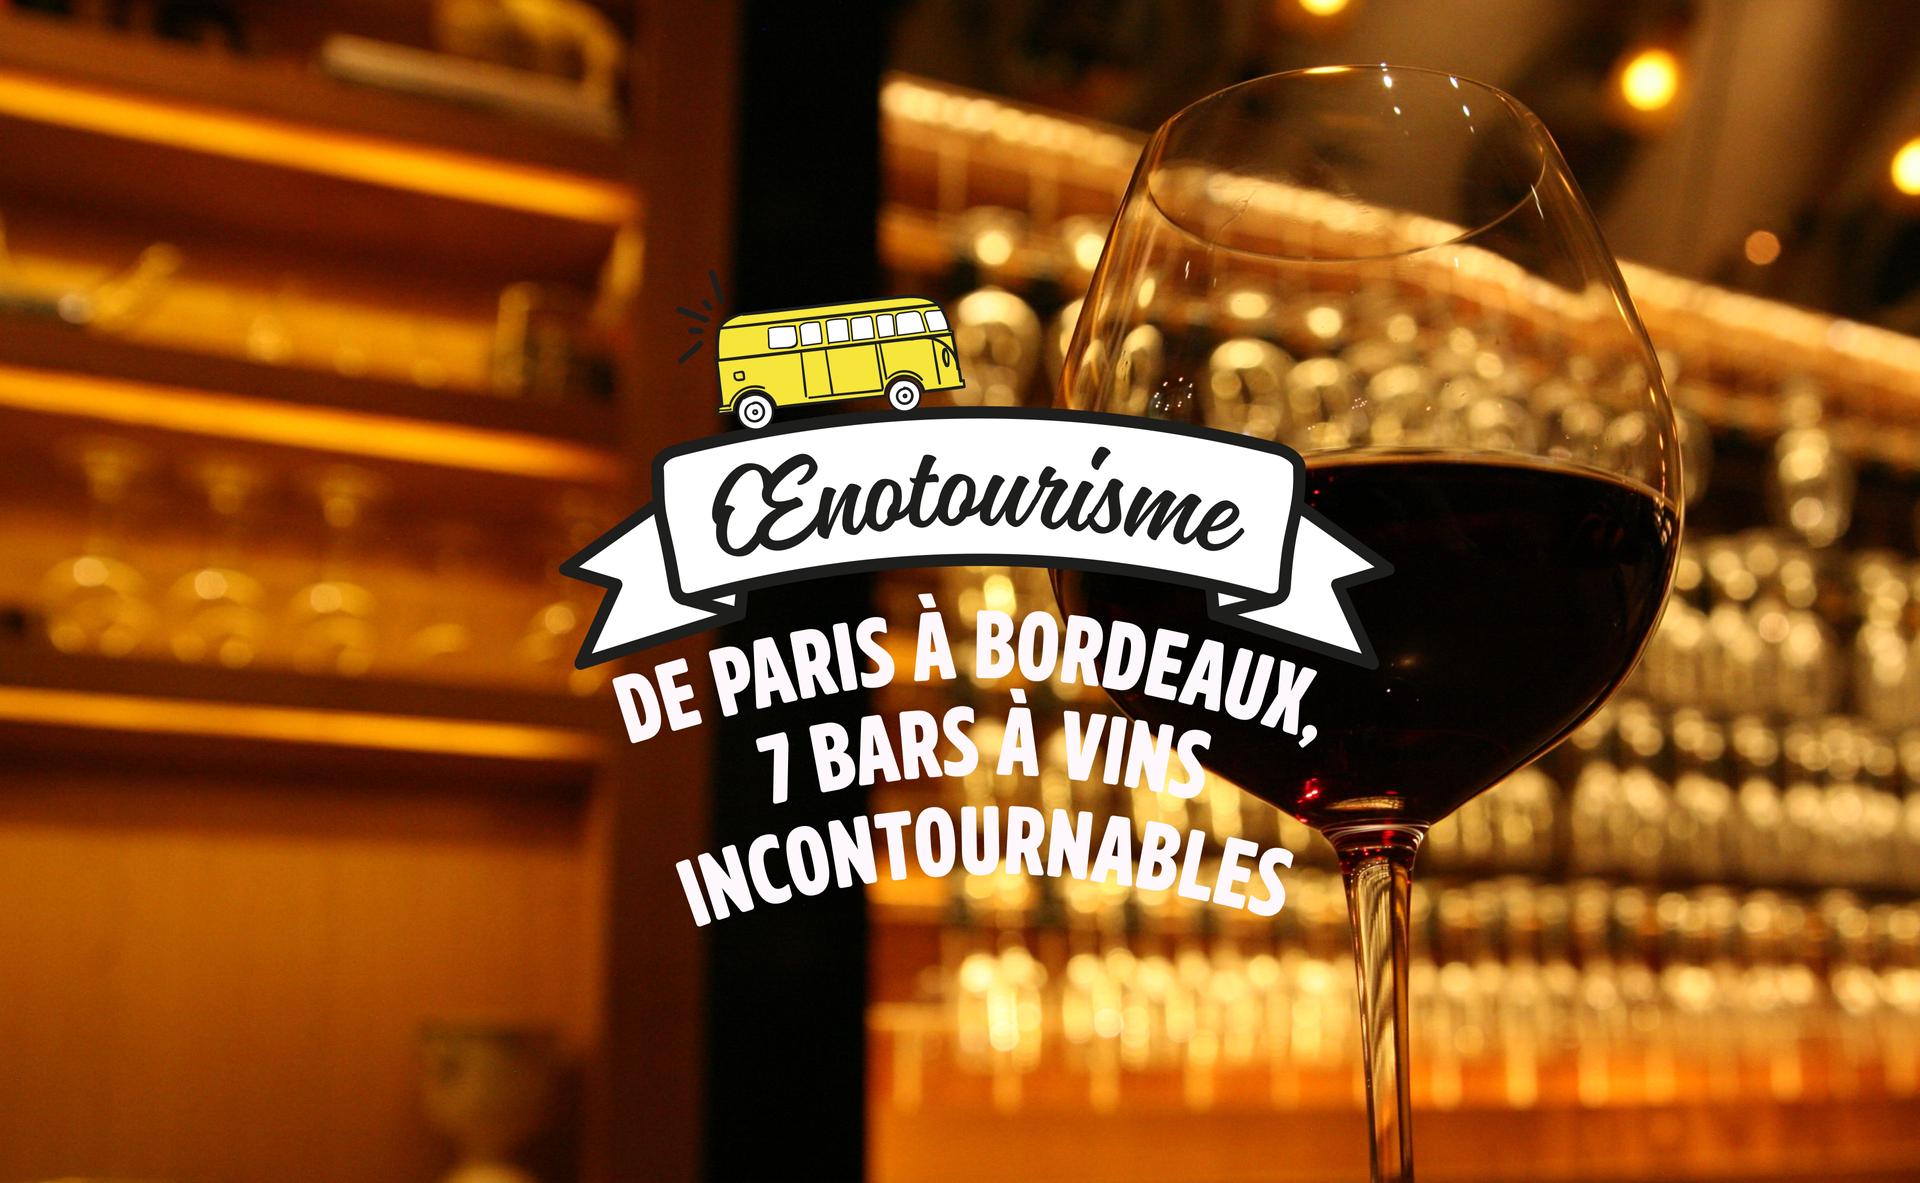 De Paris à Bordeaux, 7 bars à vins incontournables